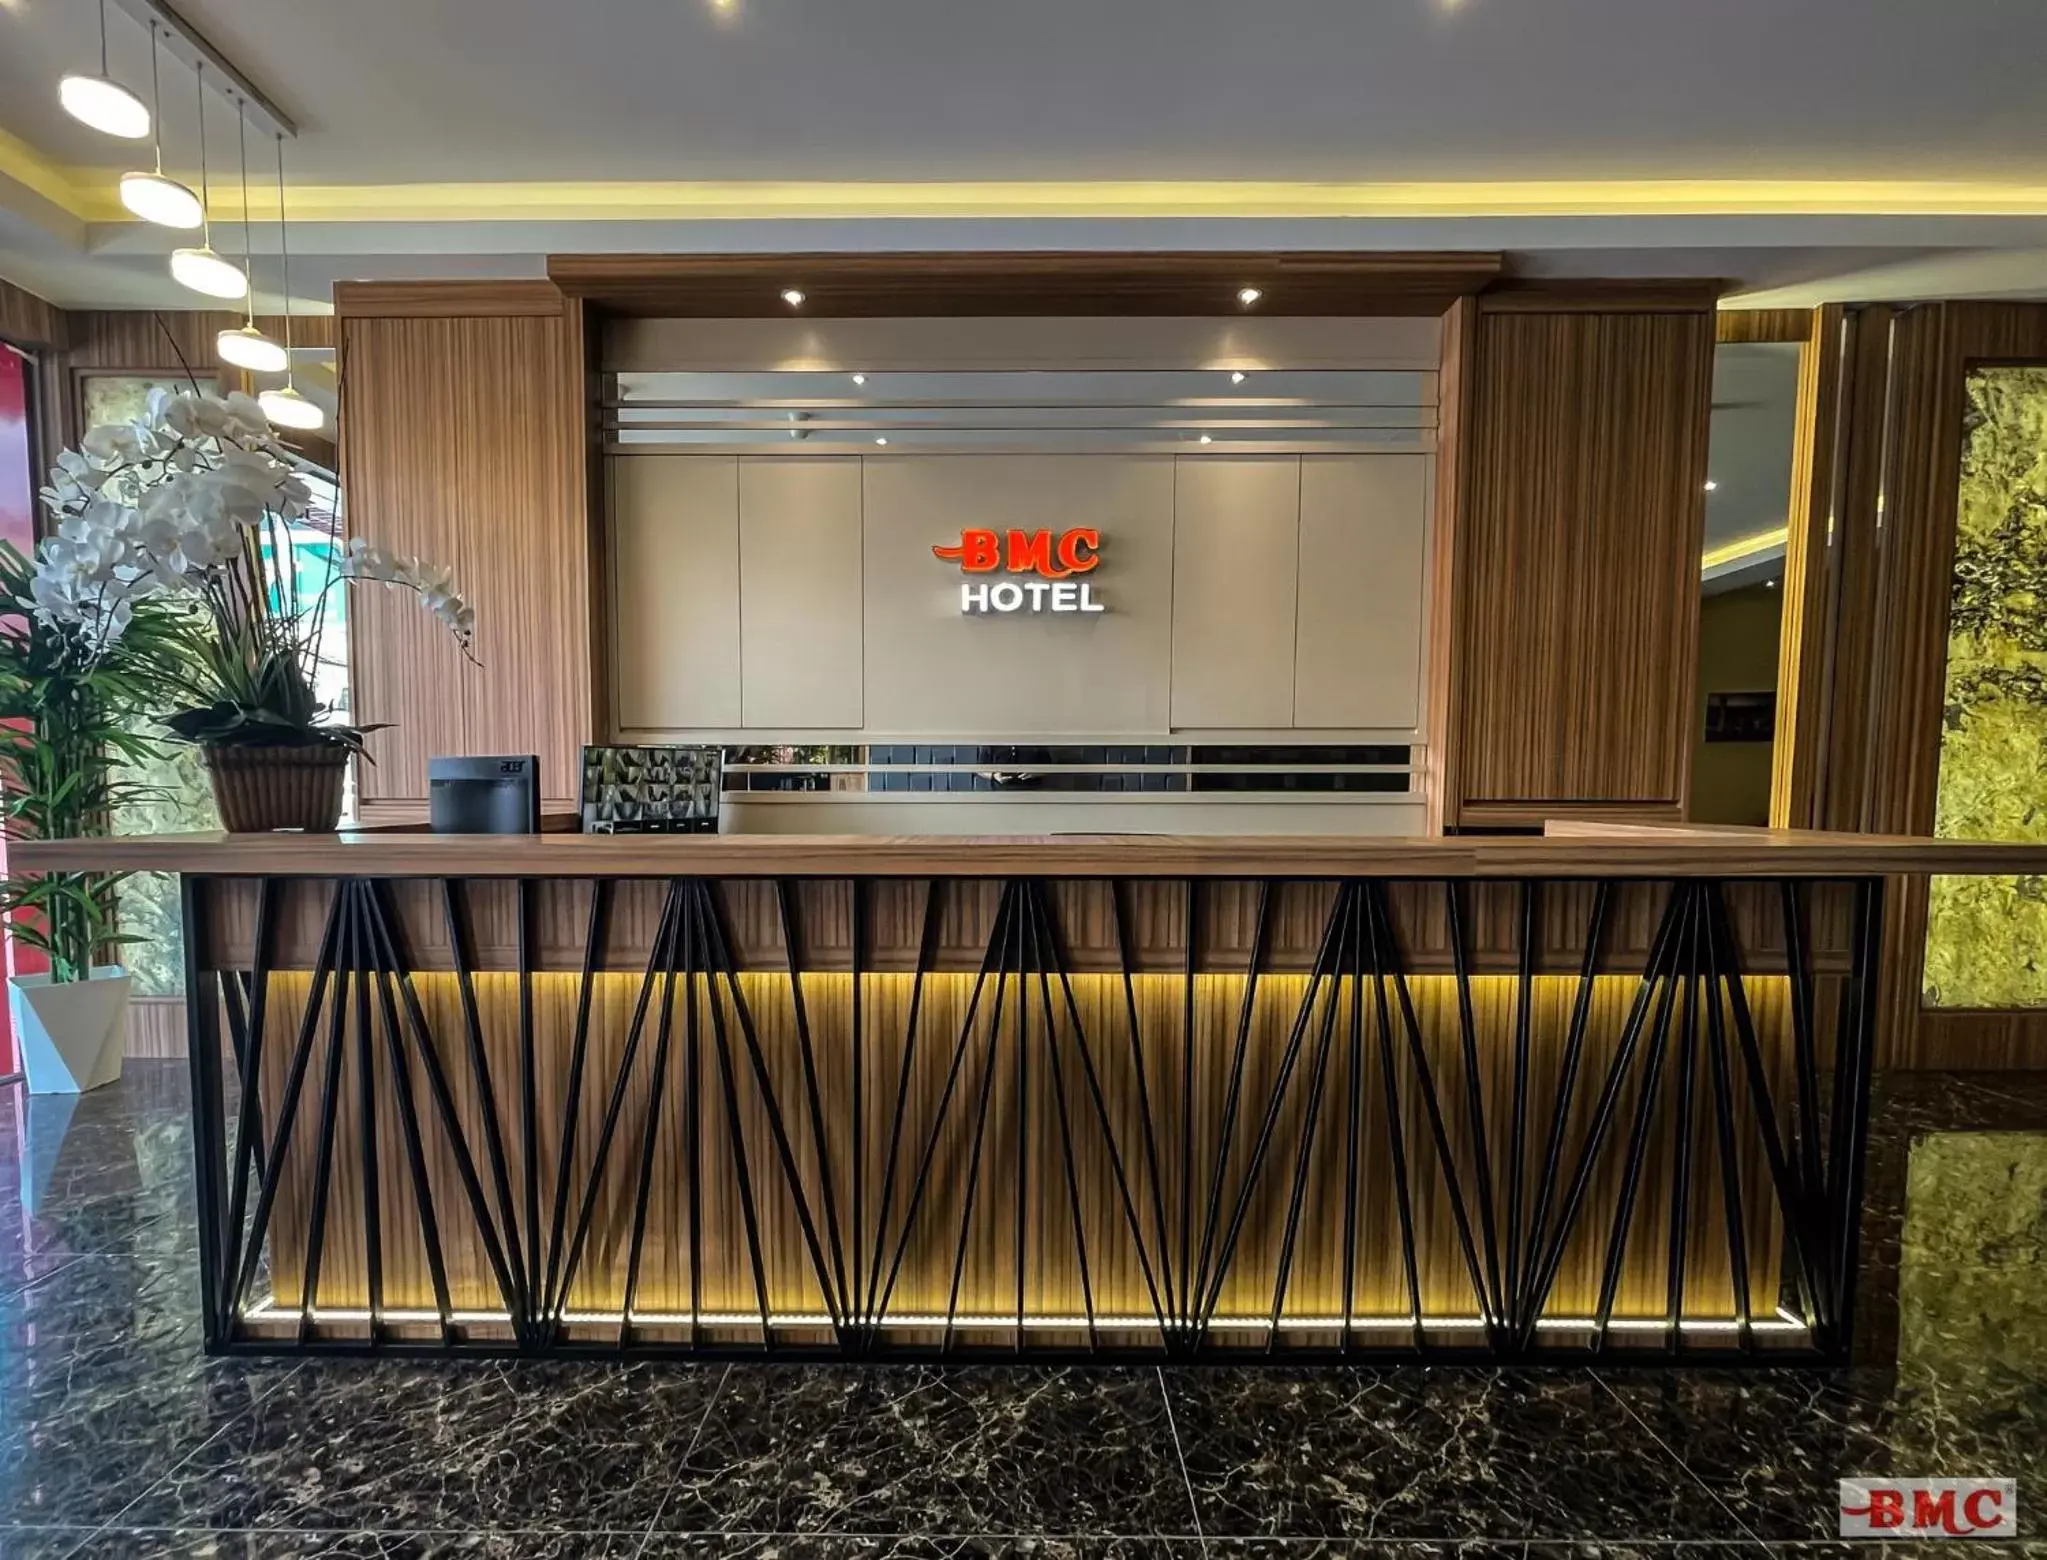 Lobby or reception in BMC Hotel